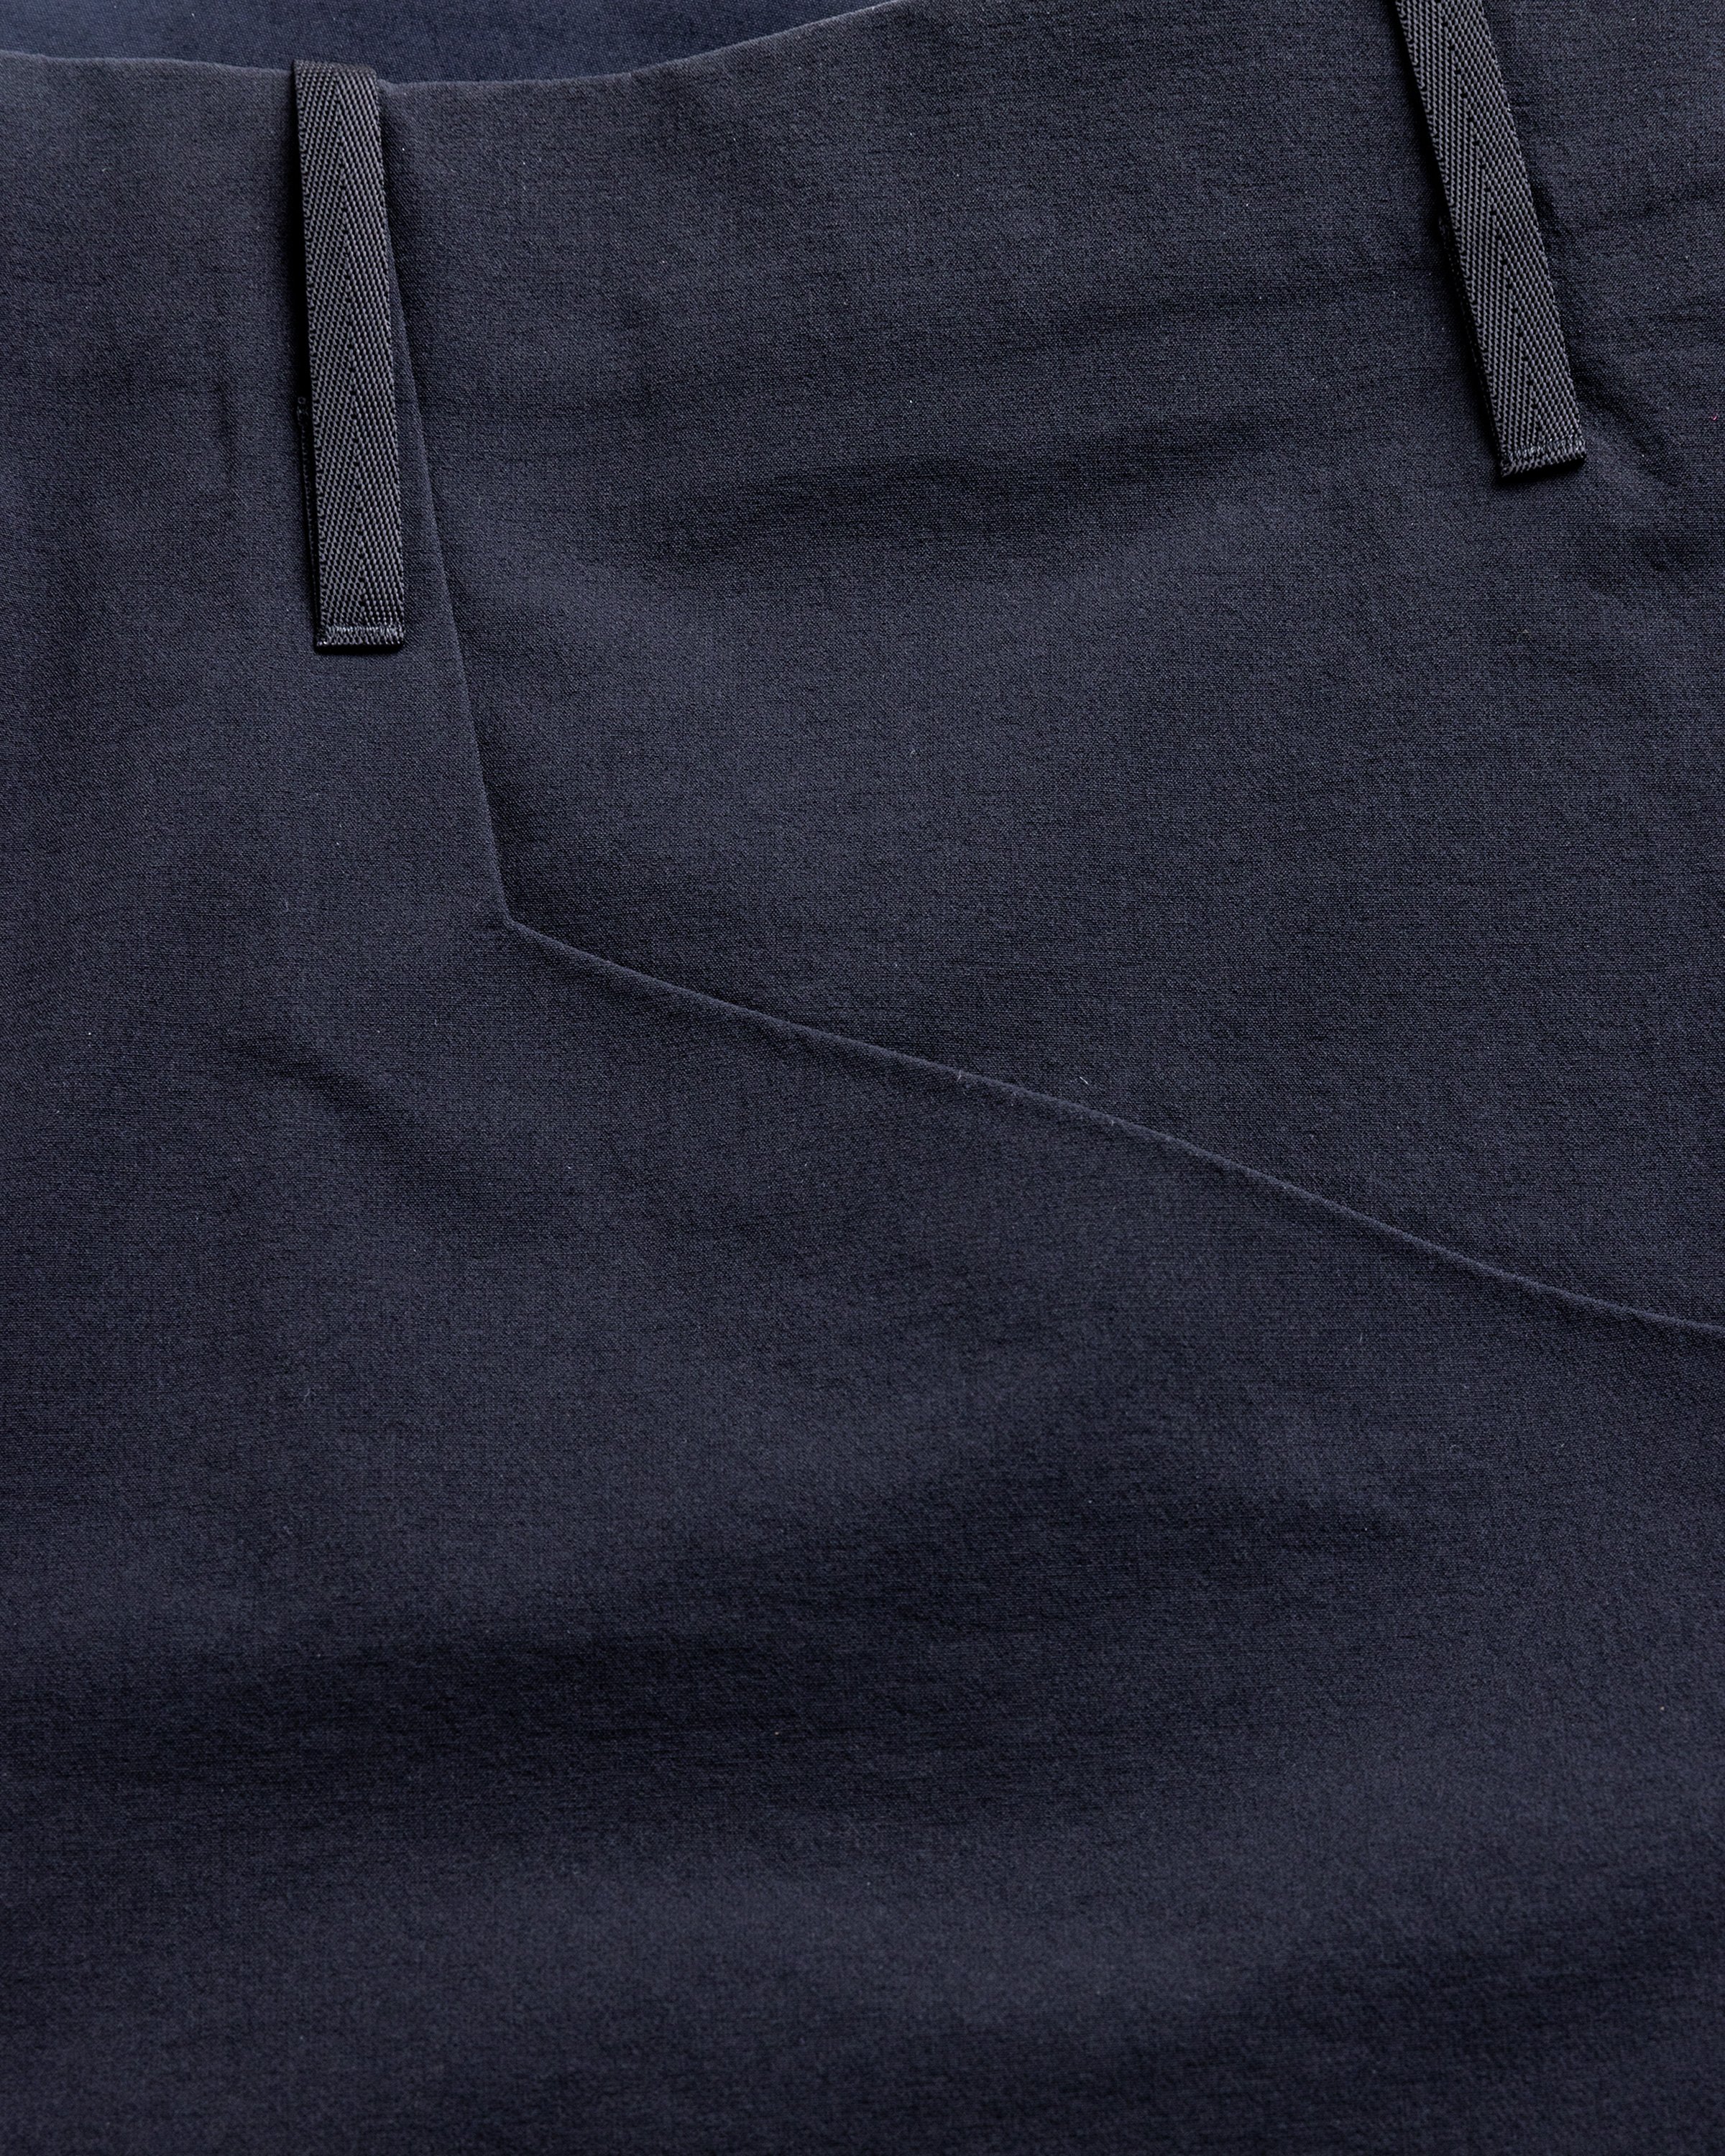 Arc’teryx Veilance - VORONOI PANT Black - Clothing - Black - Image 7